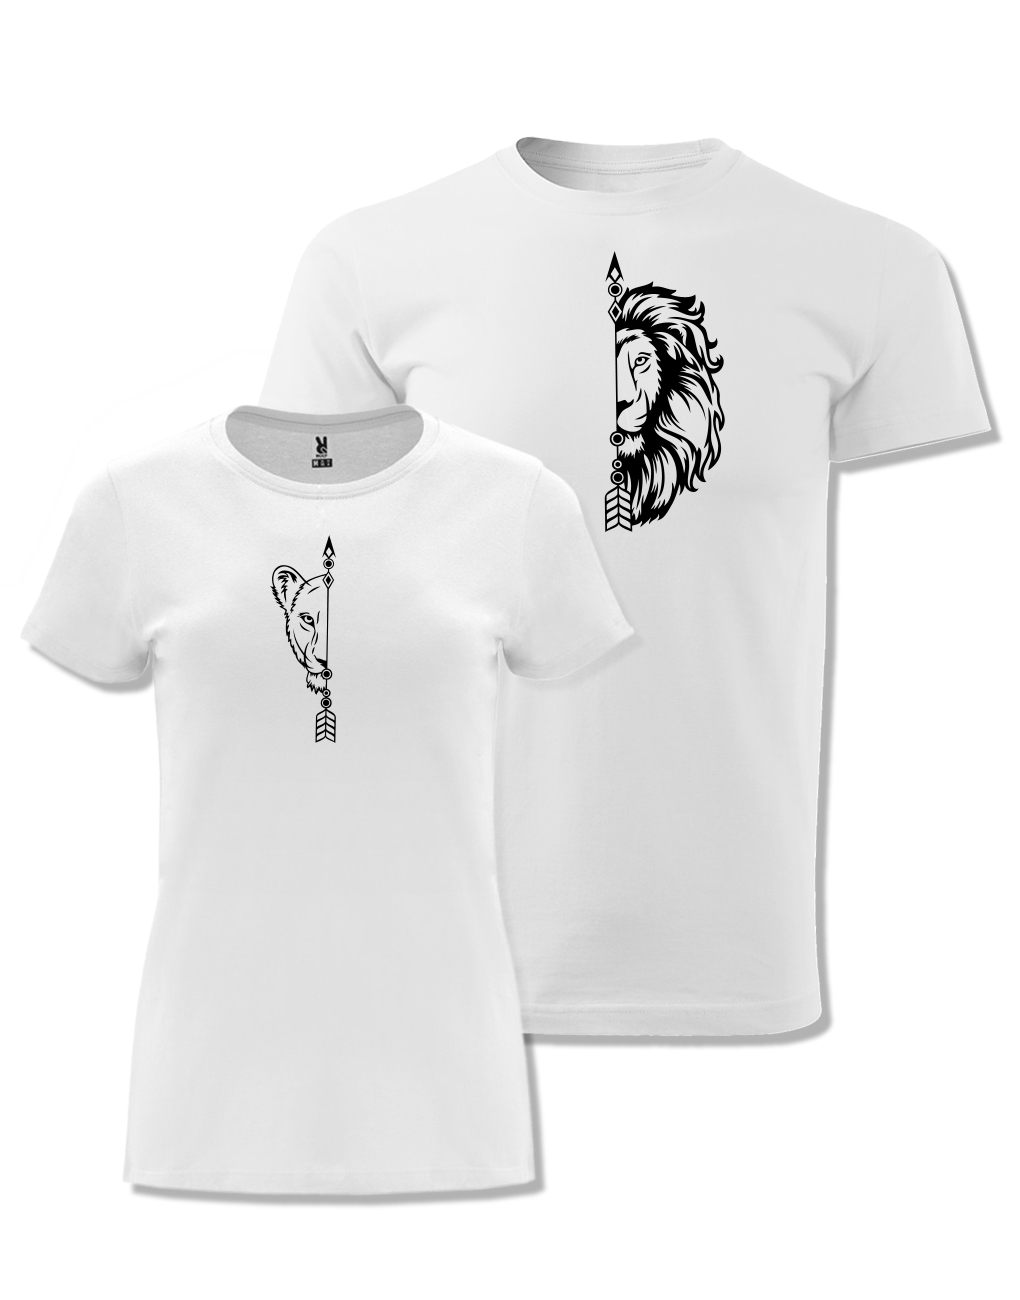 Párová trička s potiskem Lev & Lvice bílá